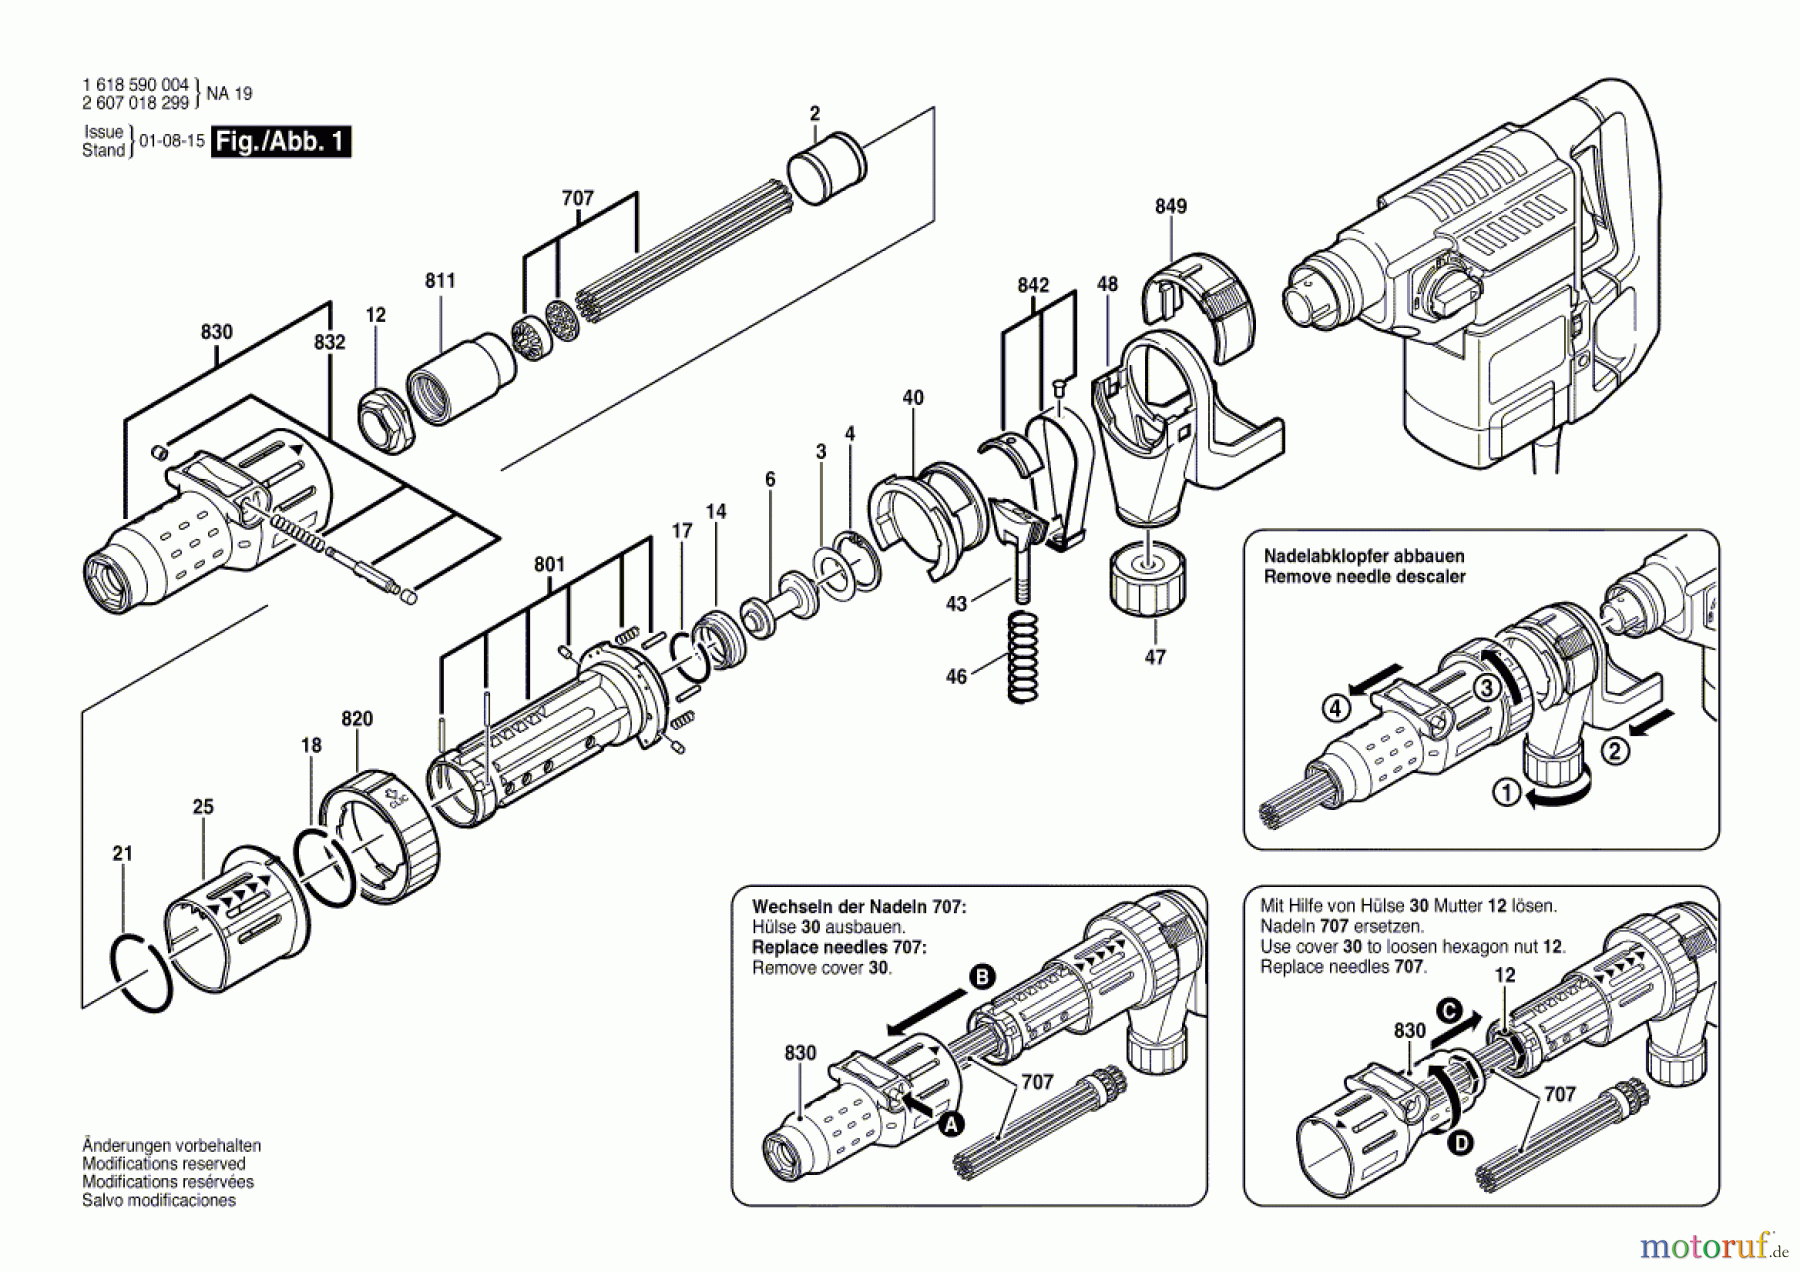  Bosch Werkzeug Nadelabklopfer ---- Seite 1